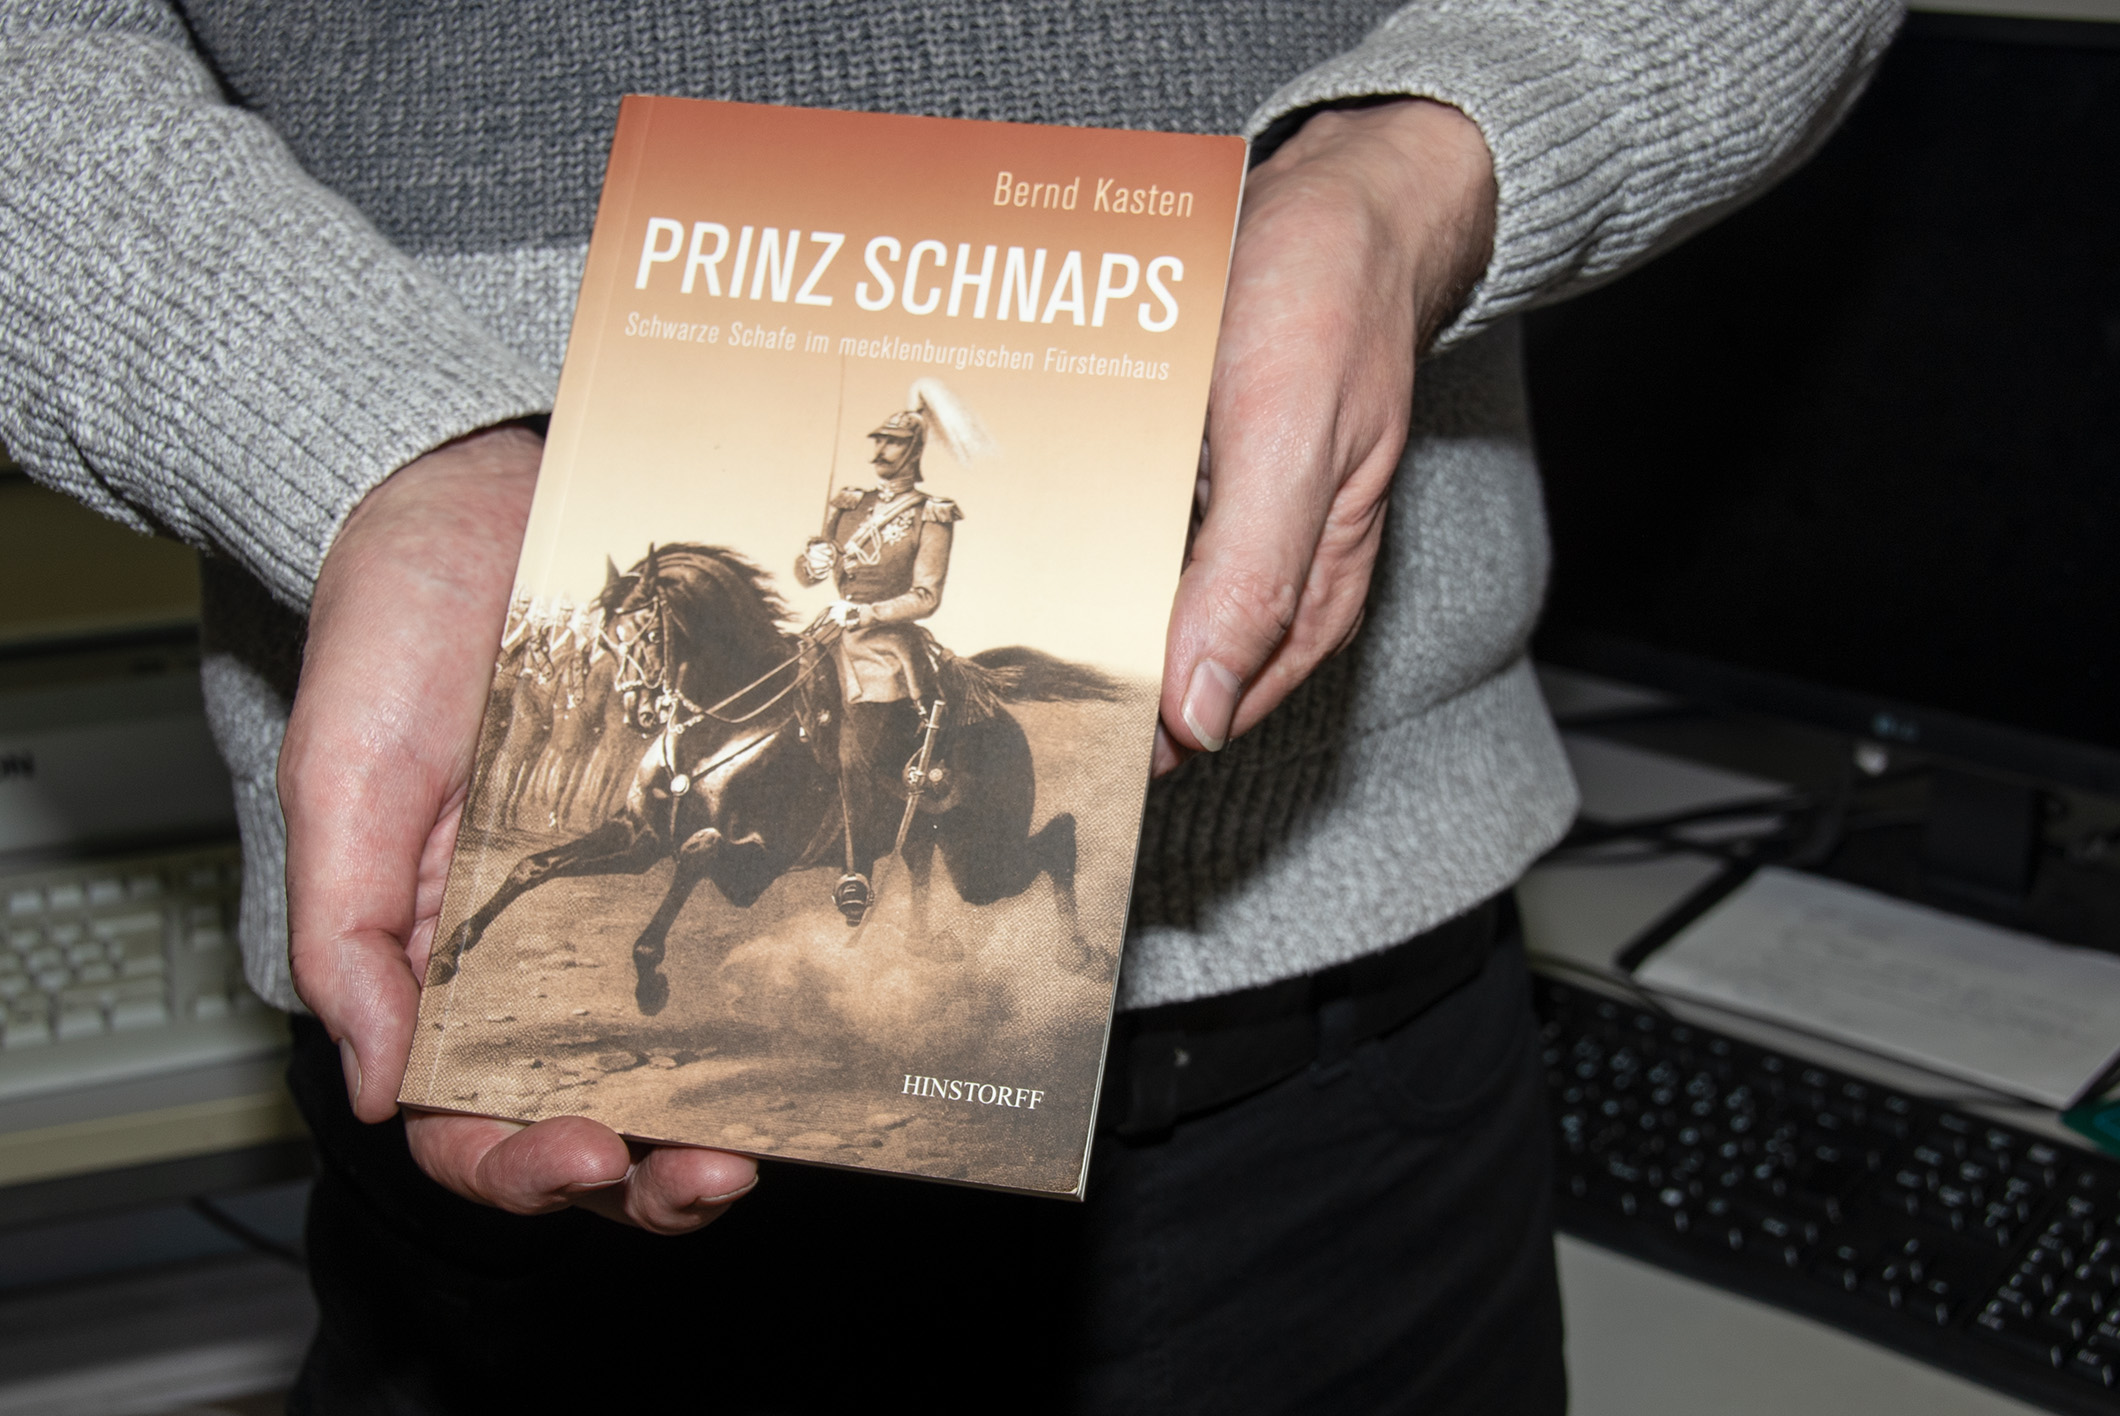 Das Buch, das den größten Anklang gefunden hat, ist sicherlich ‚Prinz Schnaps‘ gewesen“